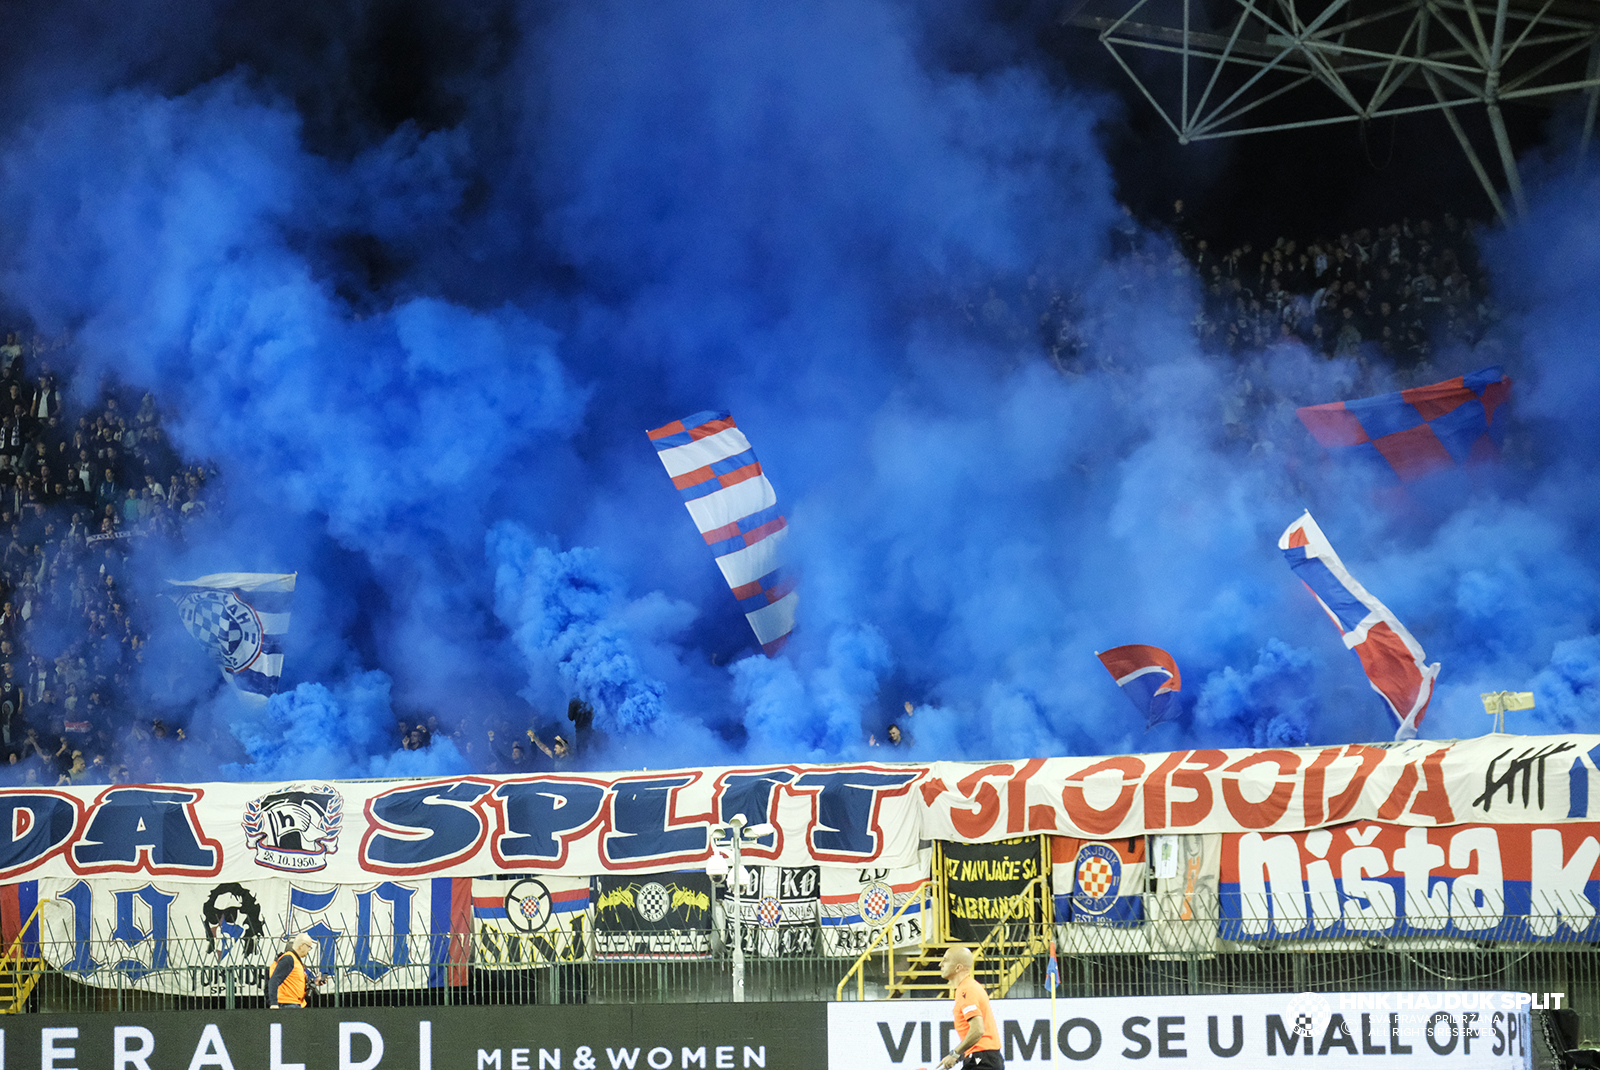 Hajduk - Dinamo (Z) 0:1